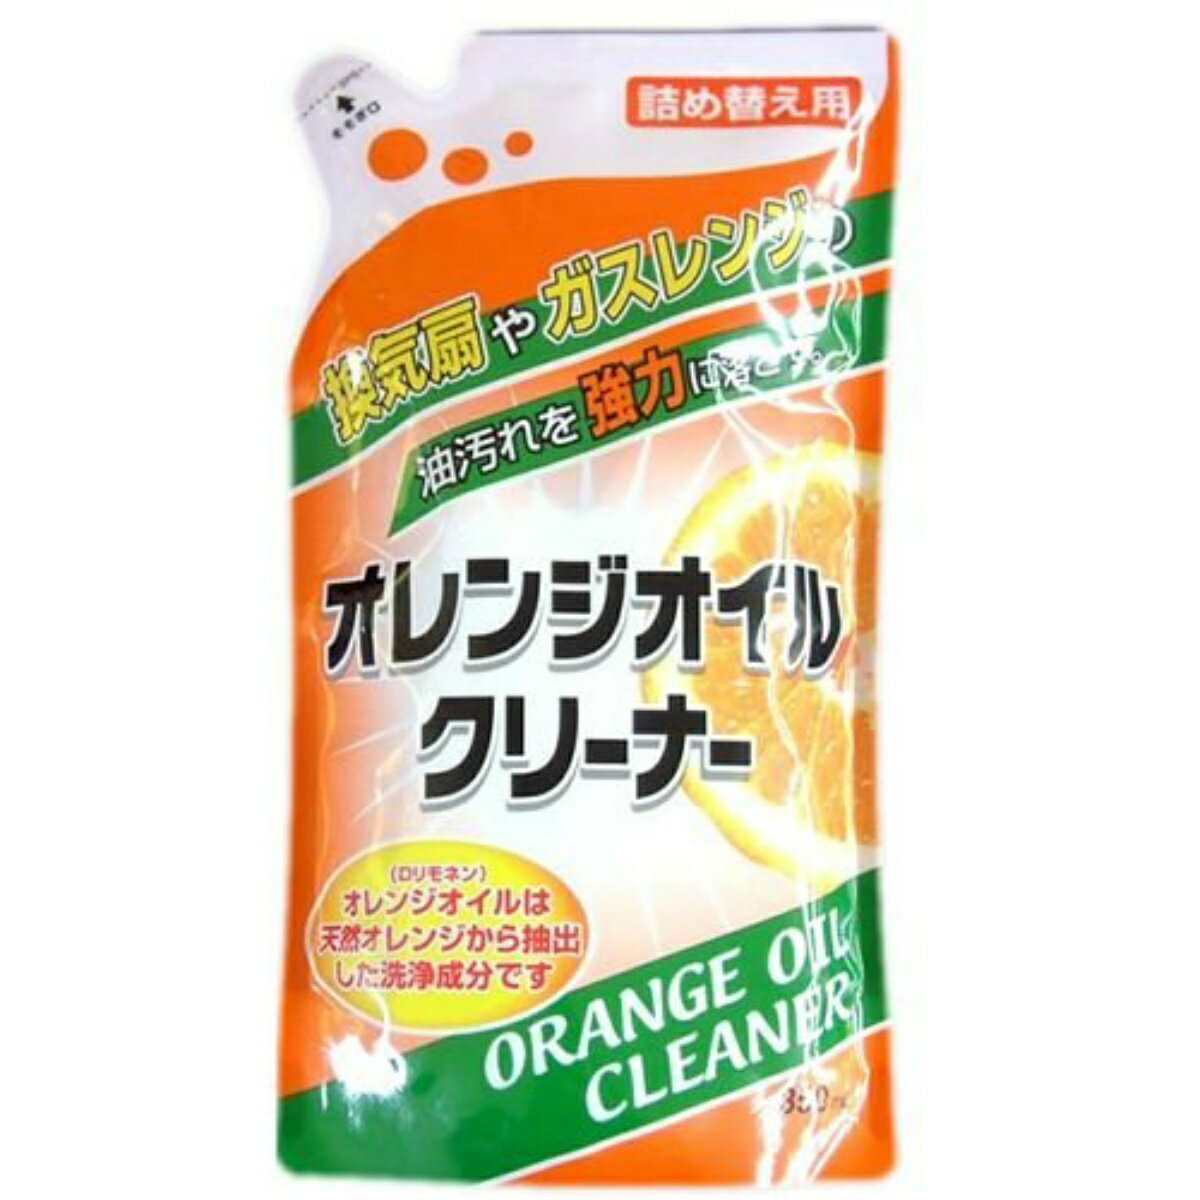 商品名：友和 オレンジオイル クリーナー 詰め替え用 350ml 内容量：350mlJANコード：4516825001987発売元、製造元、輸入元又は販売元：株式会社友和原産国：日本商品番号：101-r002-4516825001987オレンジオイル（Dリモネン）は、オレンジから抽出した天然洗浄成分です。油汚れに対して特に効果が有り、換気扇やガスレンジなどの頑固な油汚れを強力に分解します。お求め安い詰め替えタイプ。広告文責：アットライフ株式会社TEL 050-3196-1510 ※商品パッケージは変更の場合あり。メーカー欠品または完売の際、キャンセルをお願いすることがあります。ご了承ください。